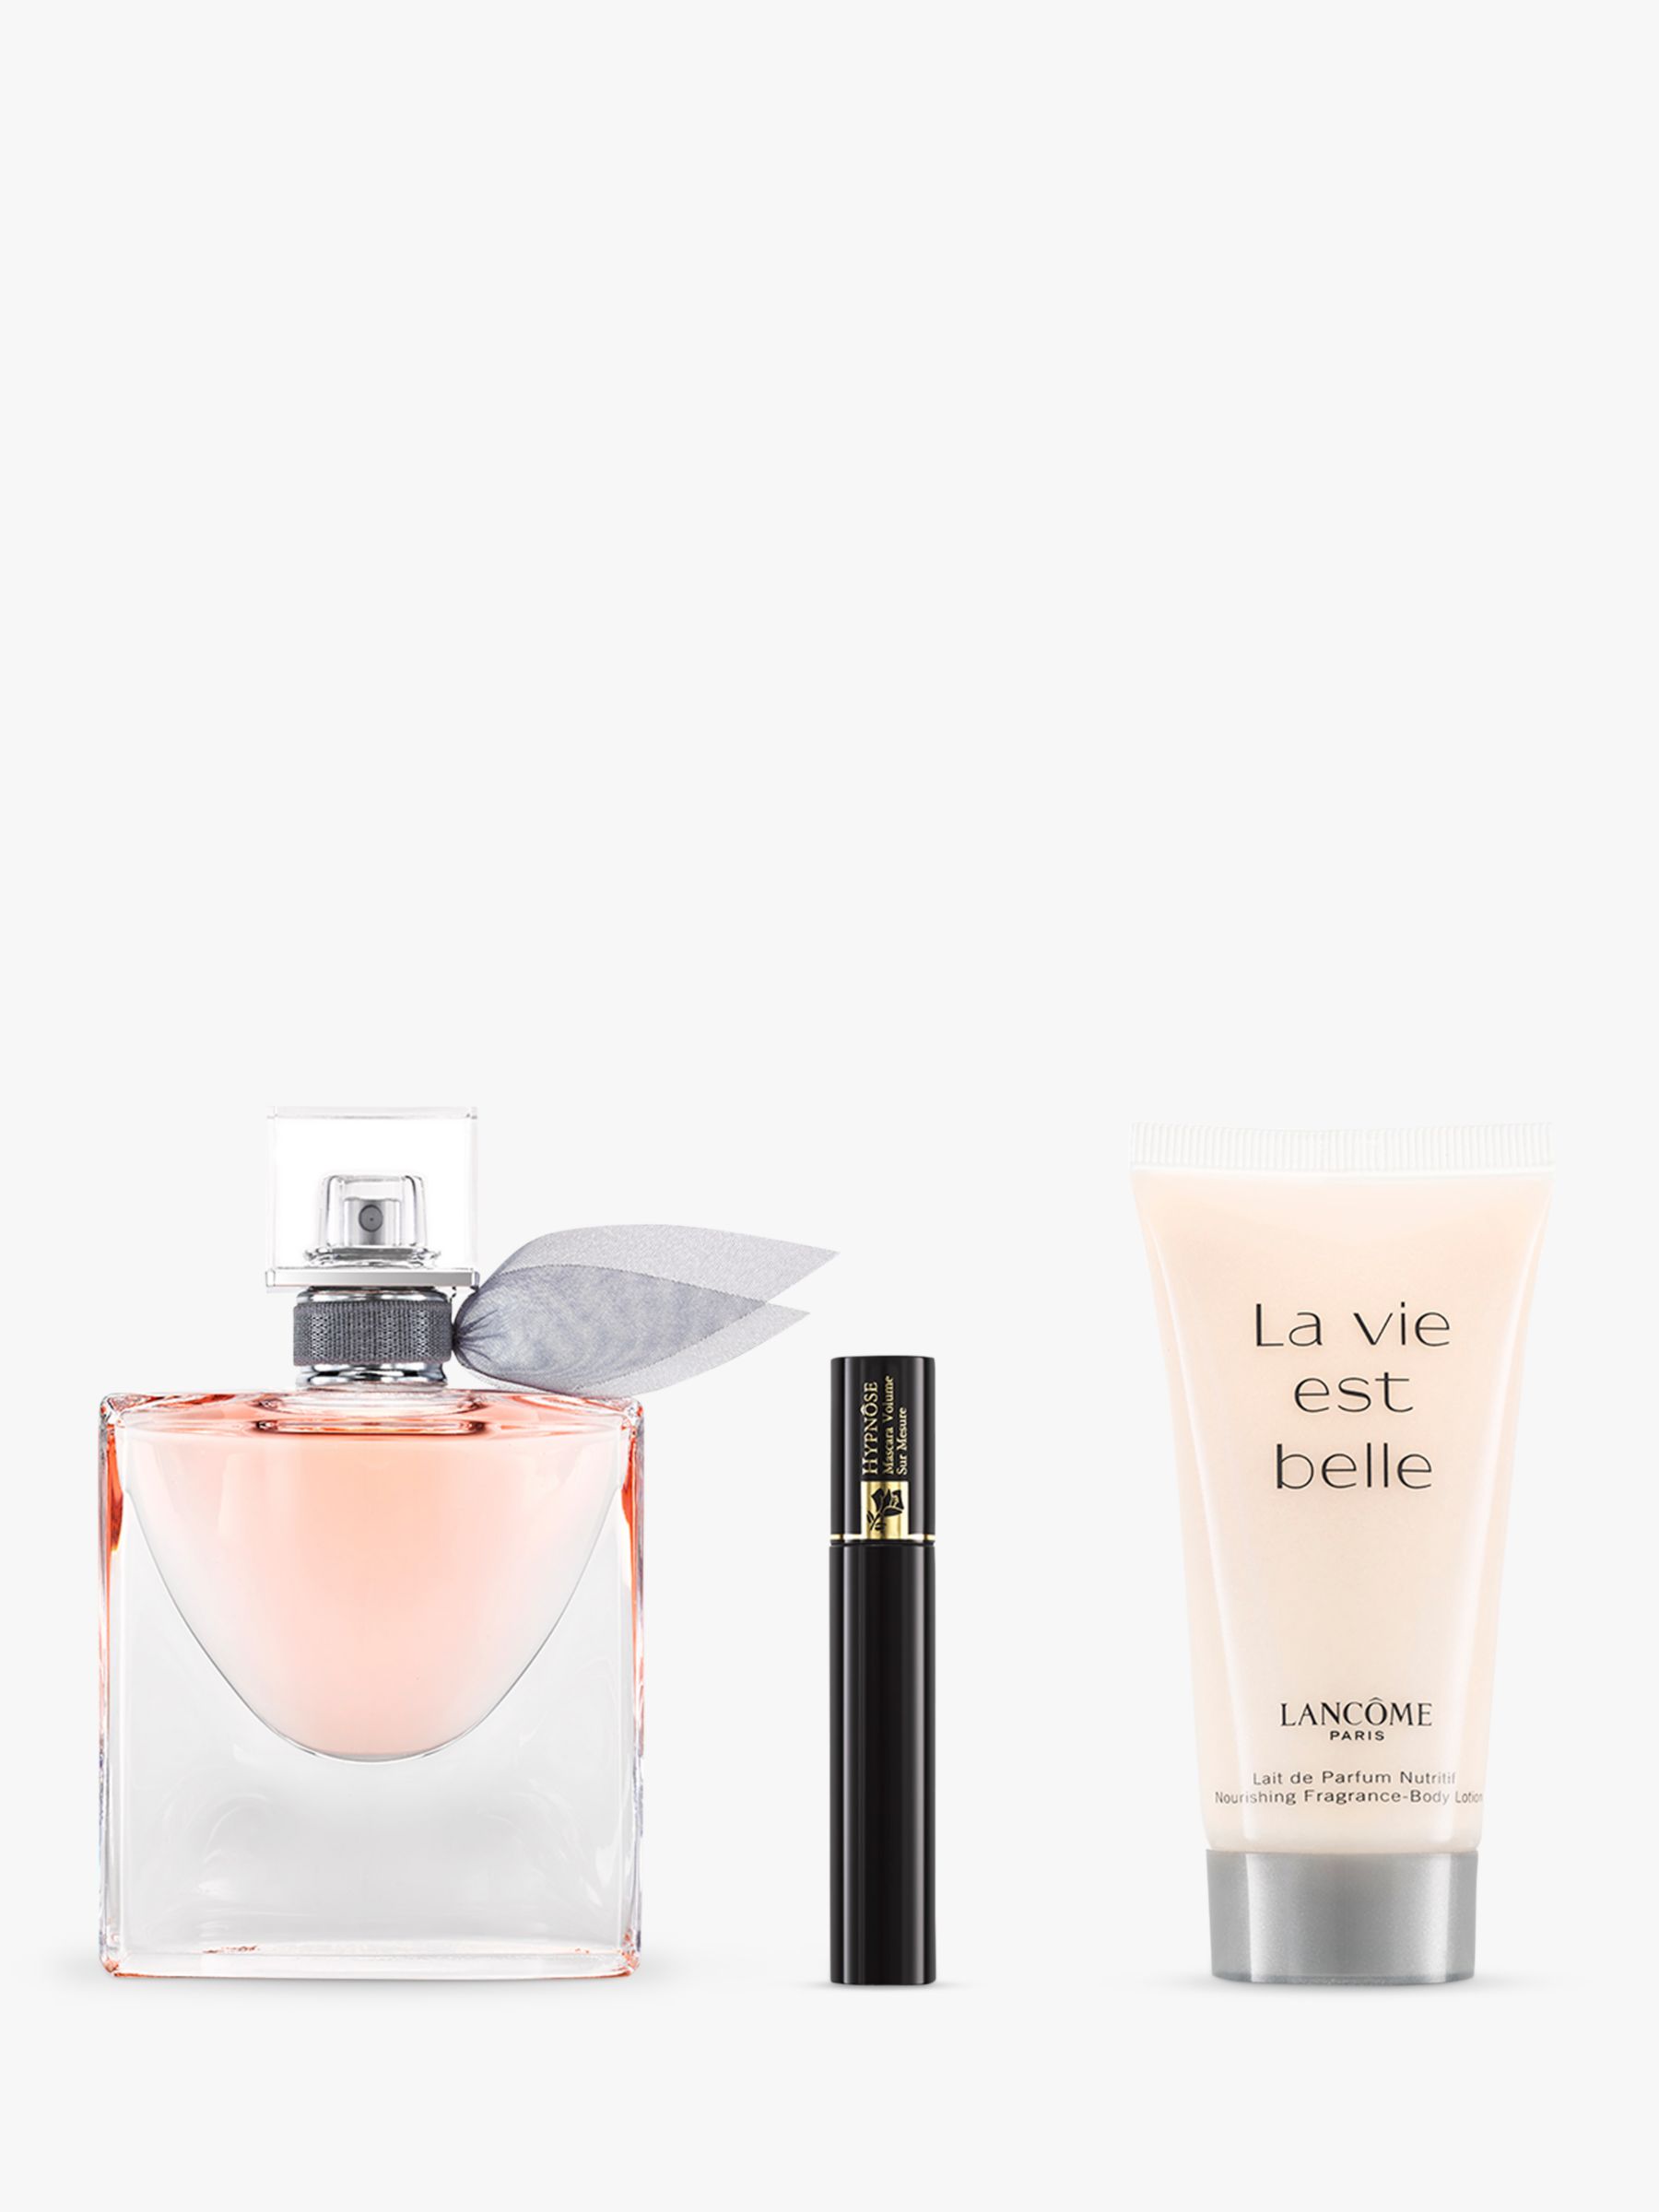 Lancôme La Vie Est Belle 30ml Eau De Parfum Fragrance Gift